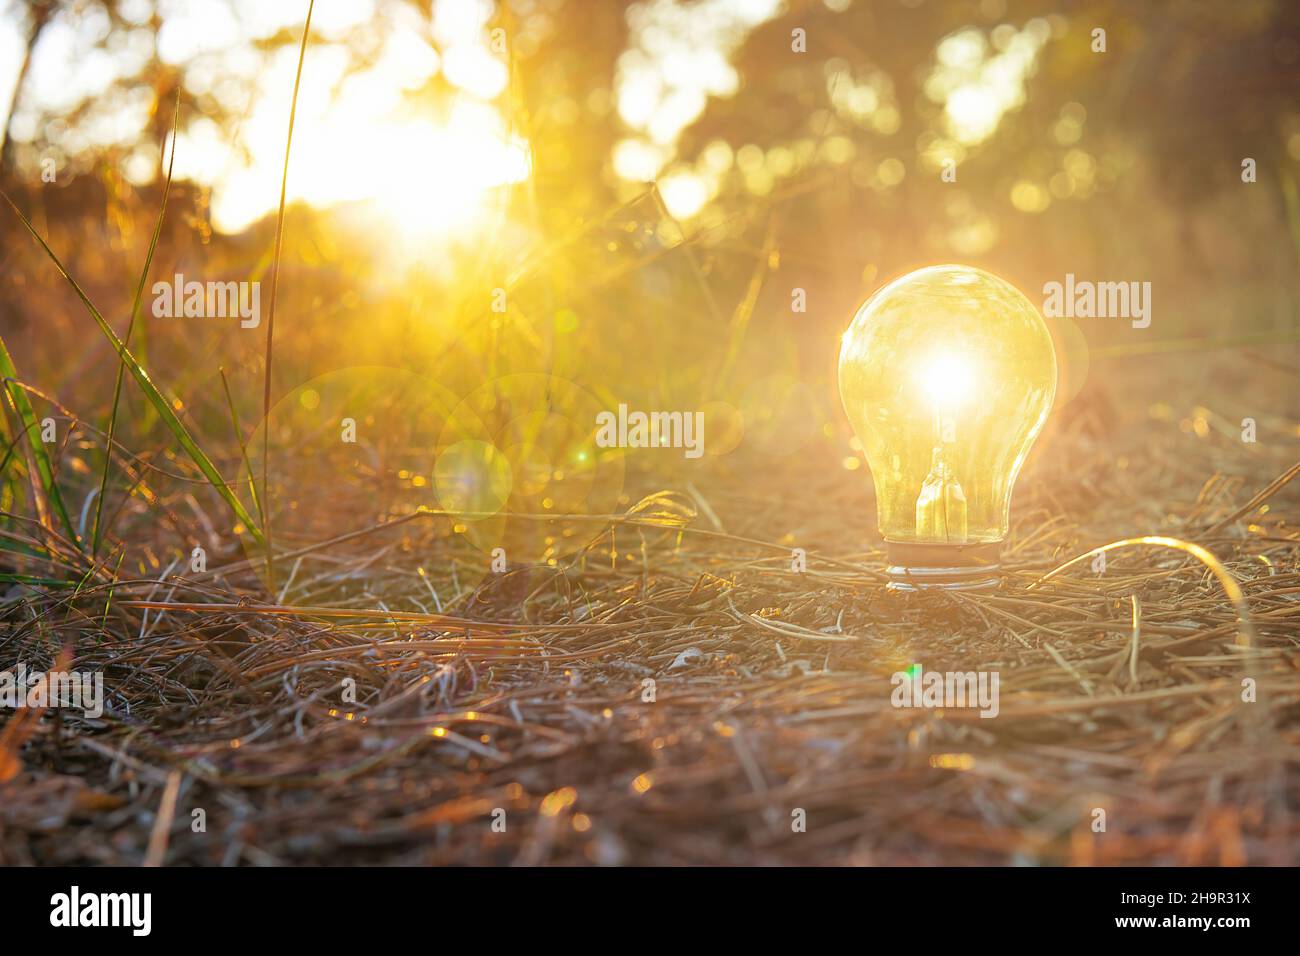 Bombilla brillante que crece en tierra iluminada por el sol. Concepto de energía solar verde. Foto de stock